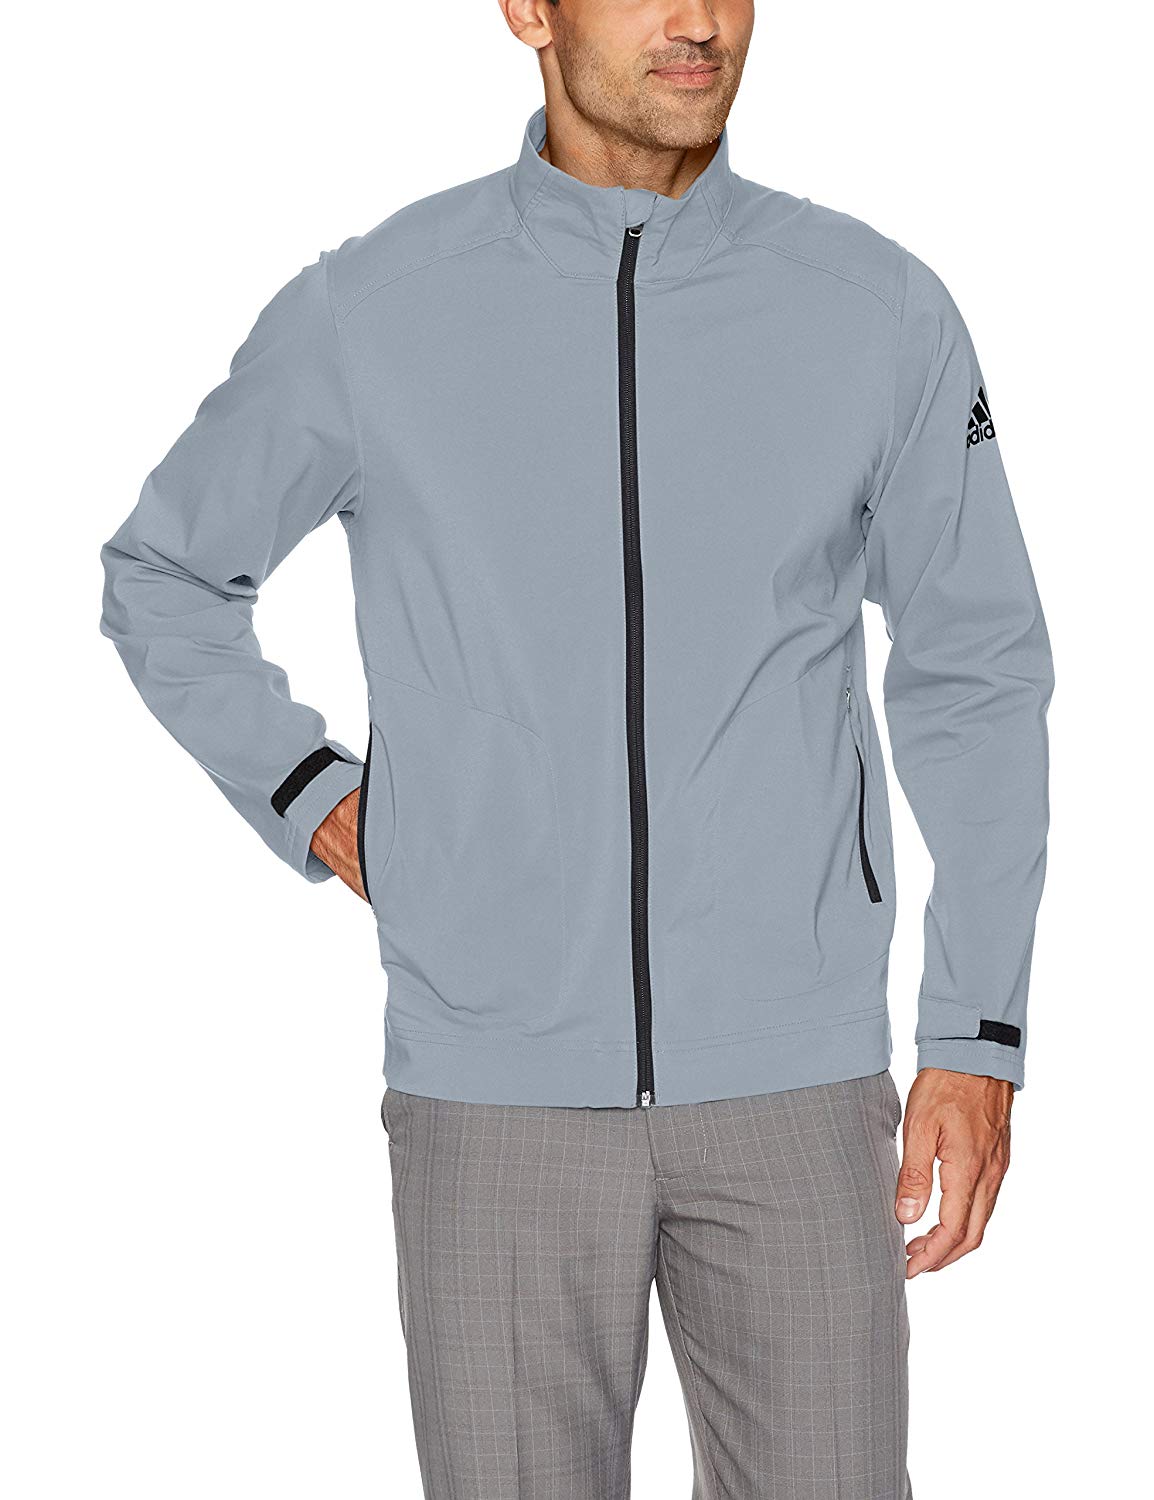 Adidas Mens Climastorm Softshell Full Zip Golf Jackets